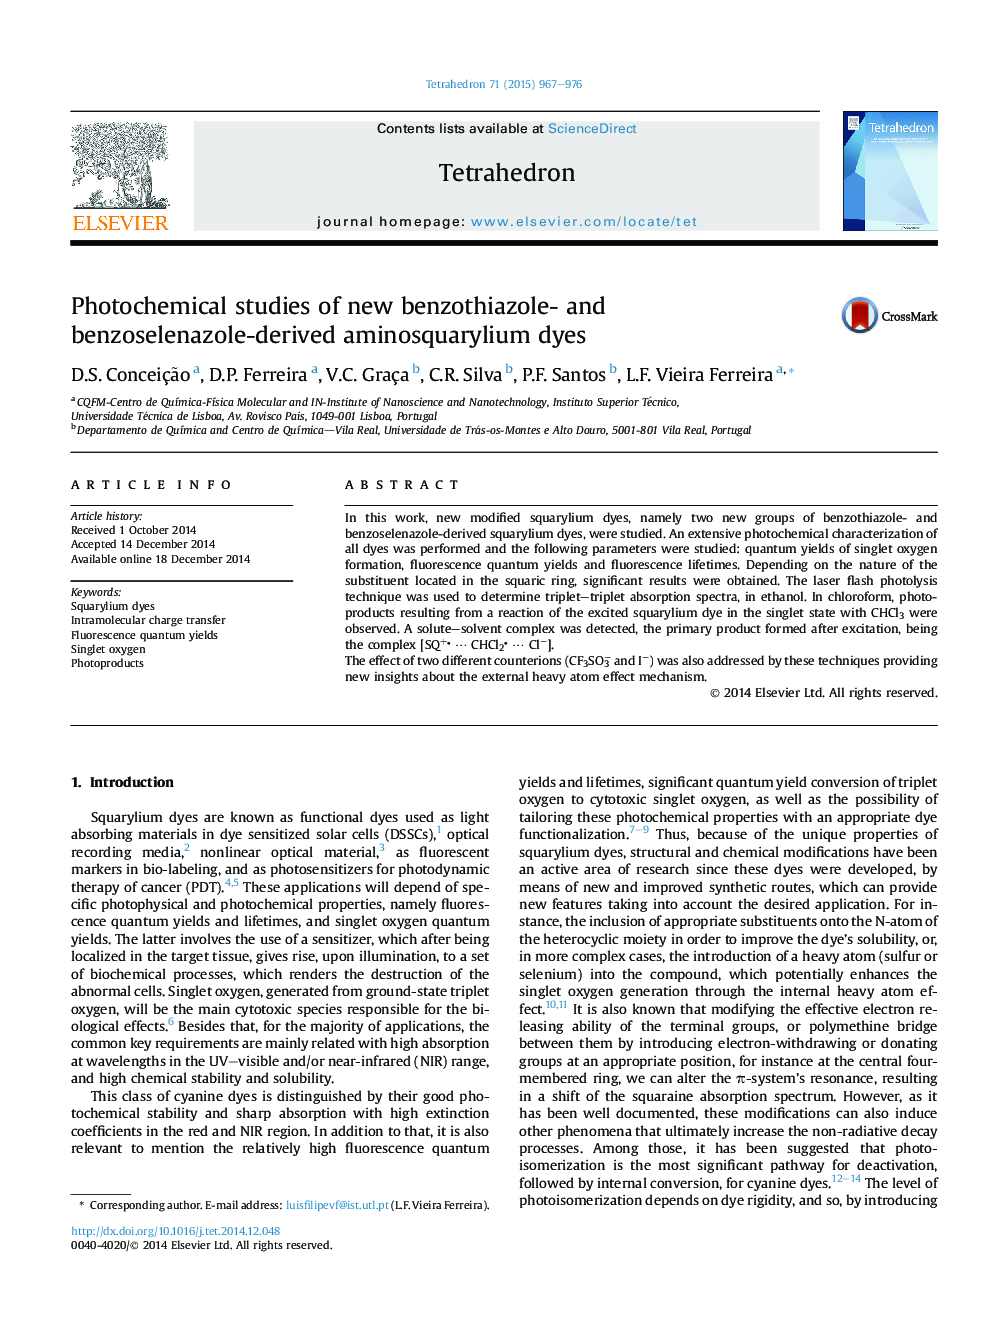 Photochemical studies of new benzothiazole- and benzoselenazole-derived aminosquarylium dyes